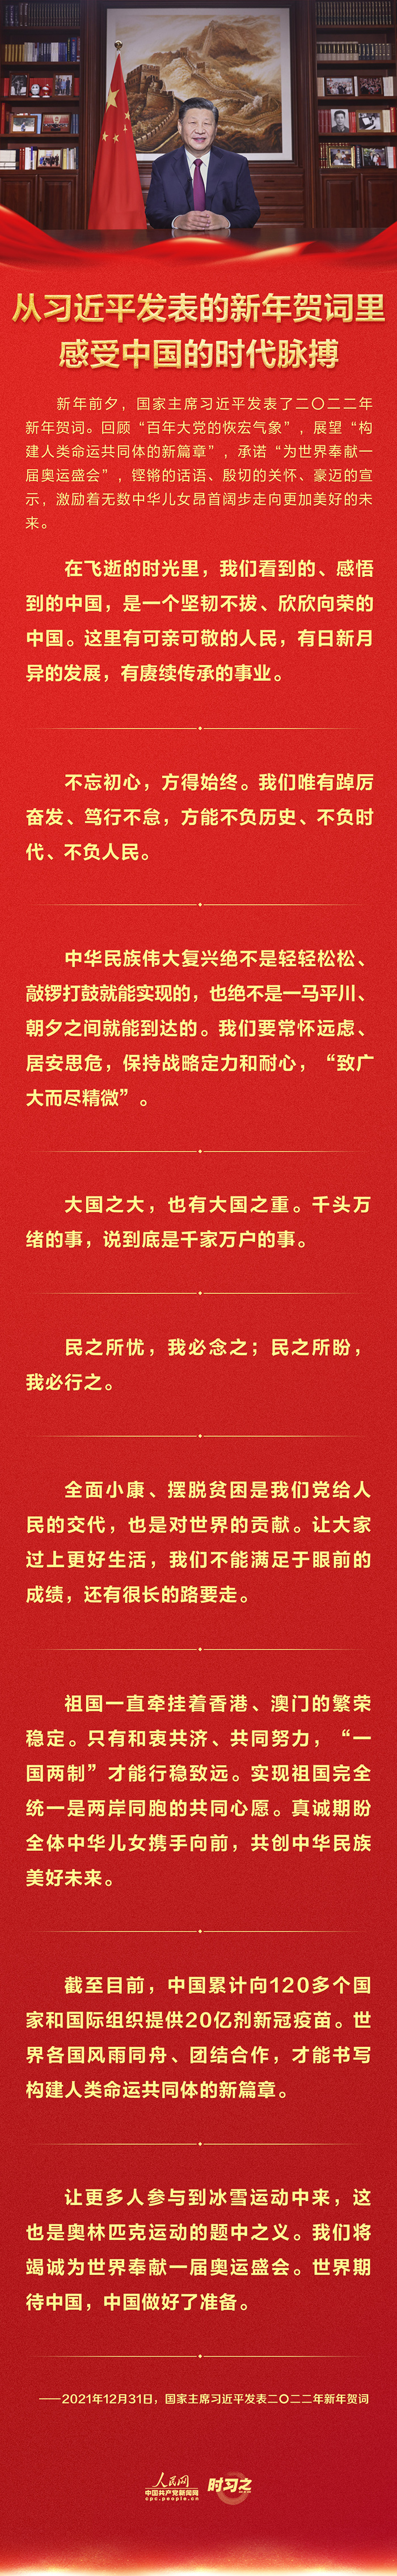 从习近平发表的新年贺词里感受中国的时代脉搏